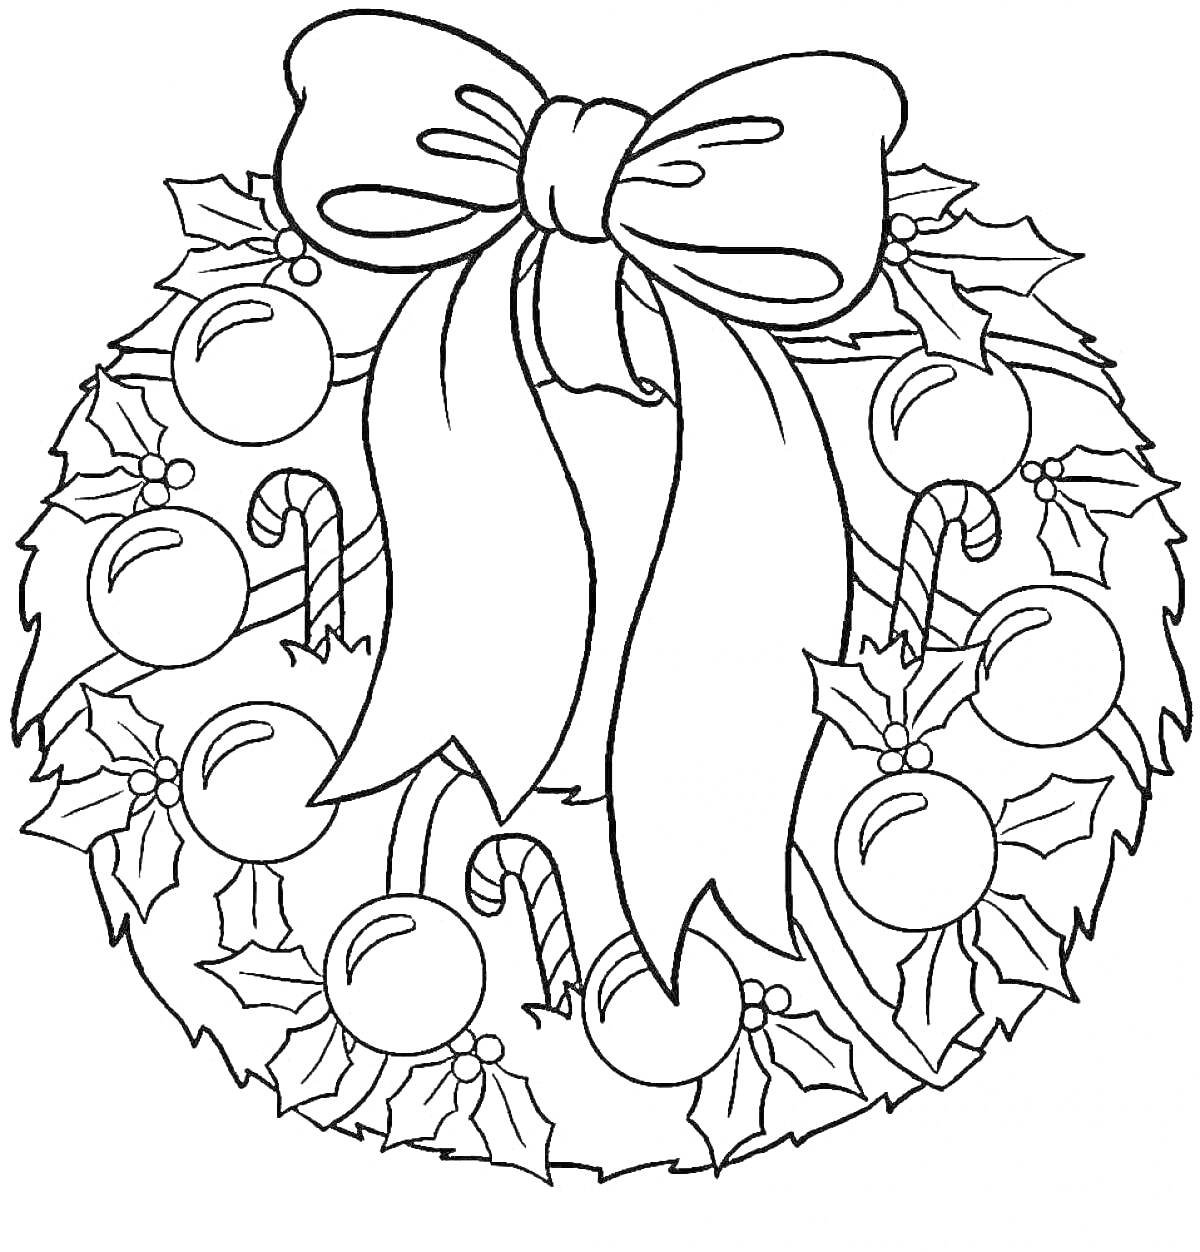 Раскраска Рождественский венок с бантами, шарами, конфетными тросточками и листьями остролиста.